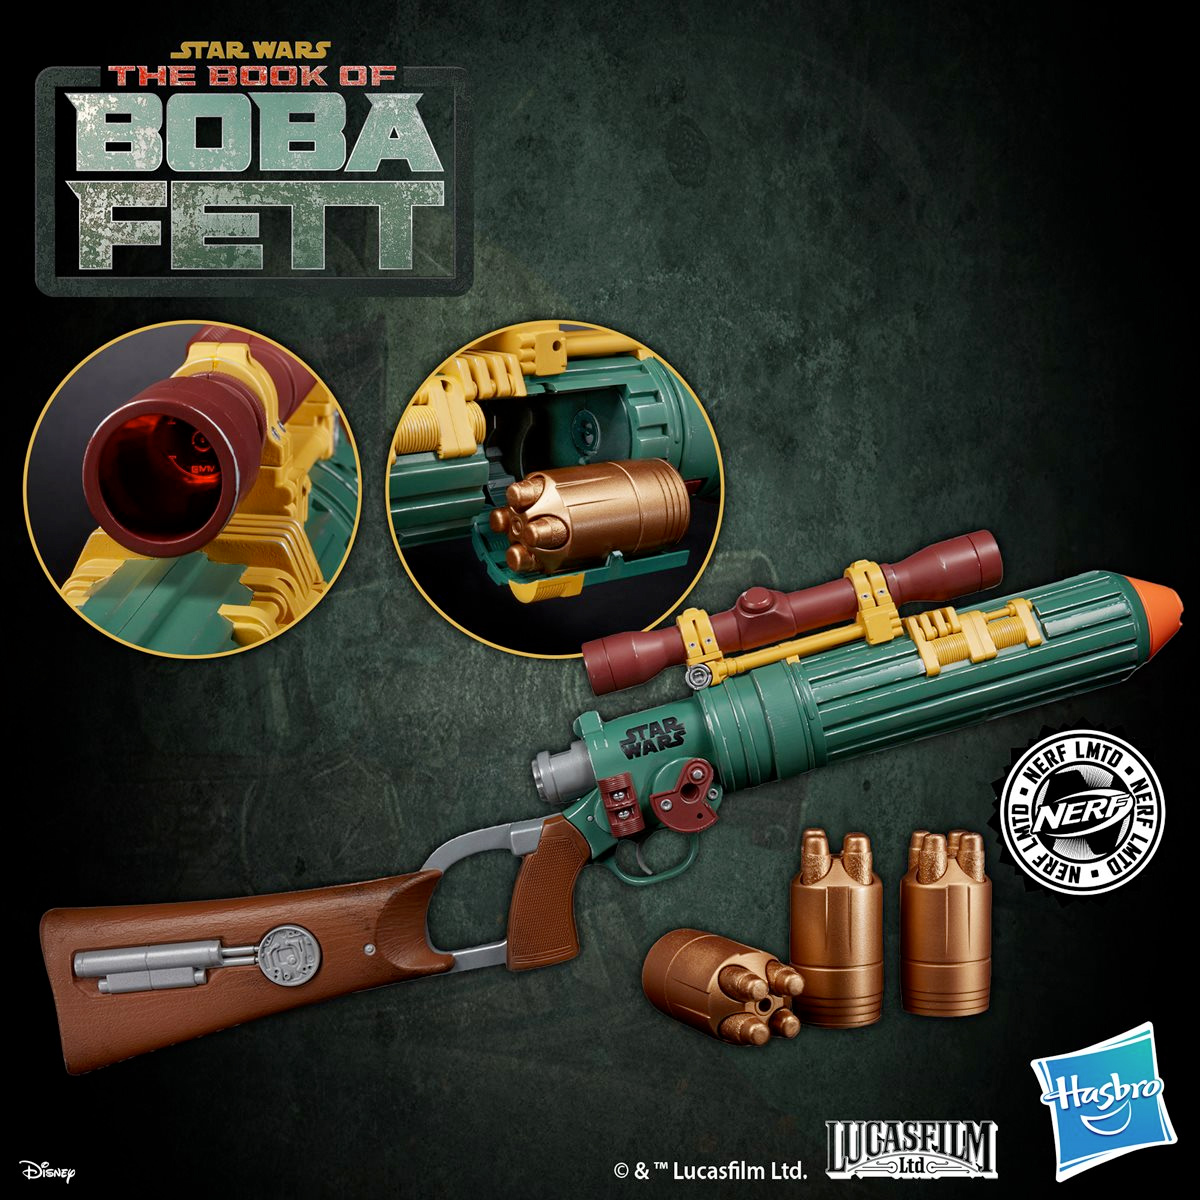 The Book of Boba Fett-Nerf EE-3 Star Wars Blaster